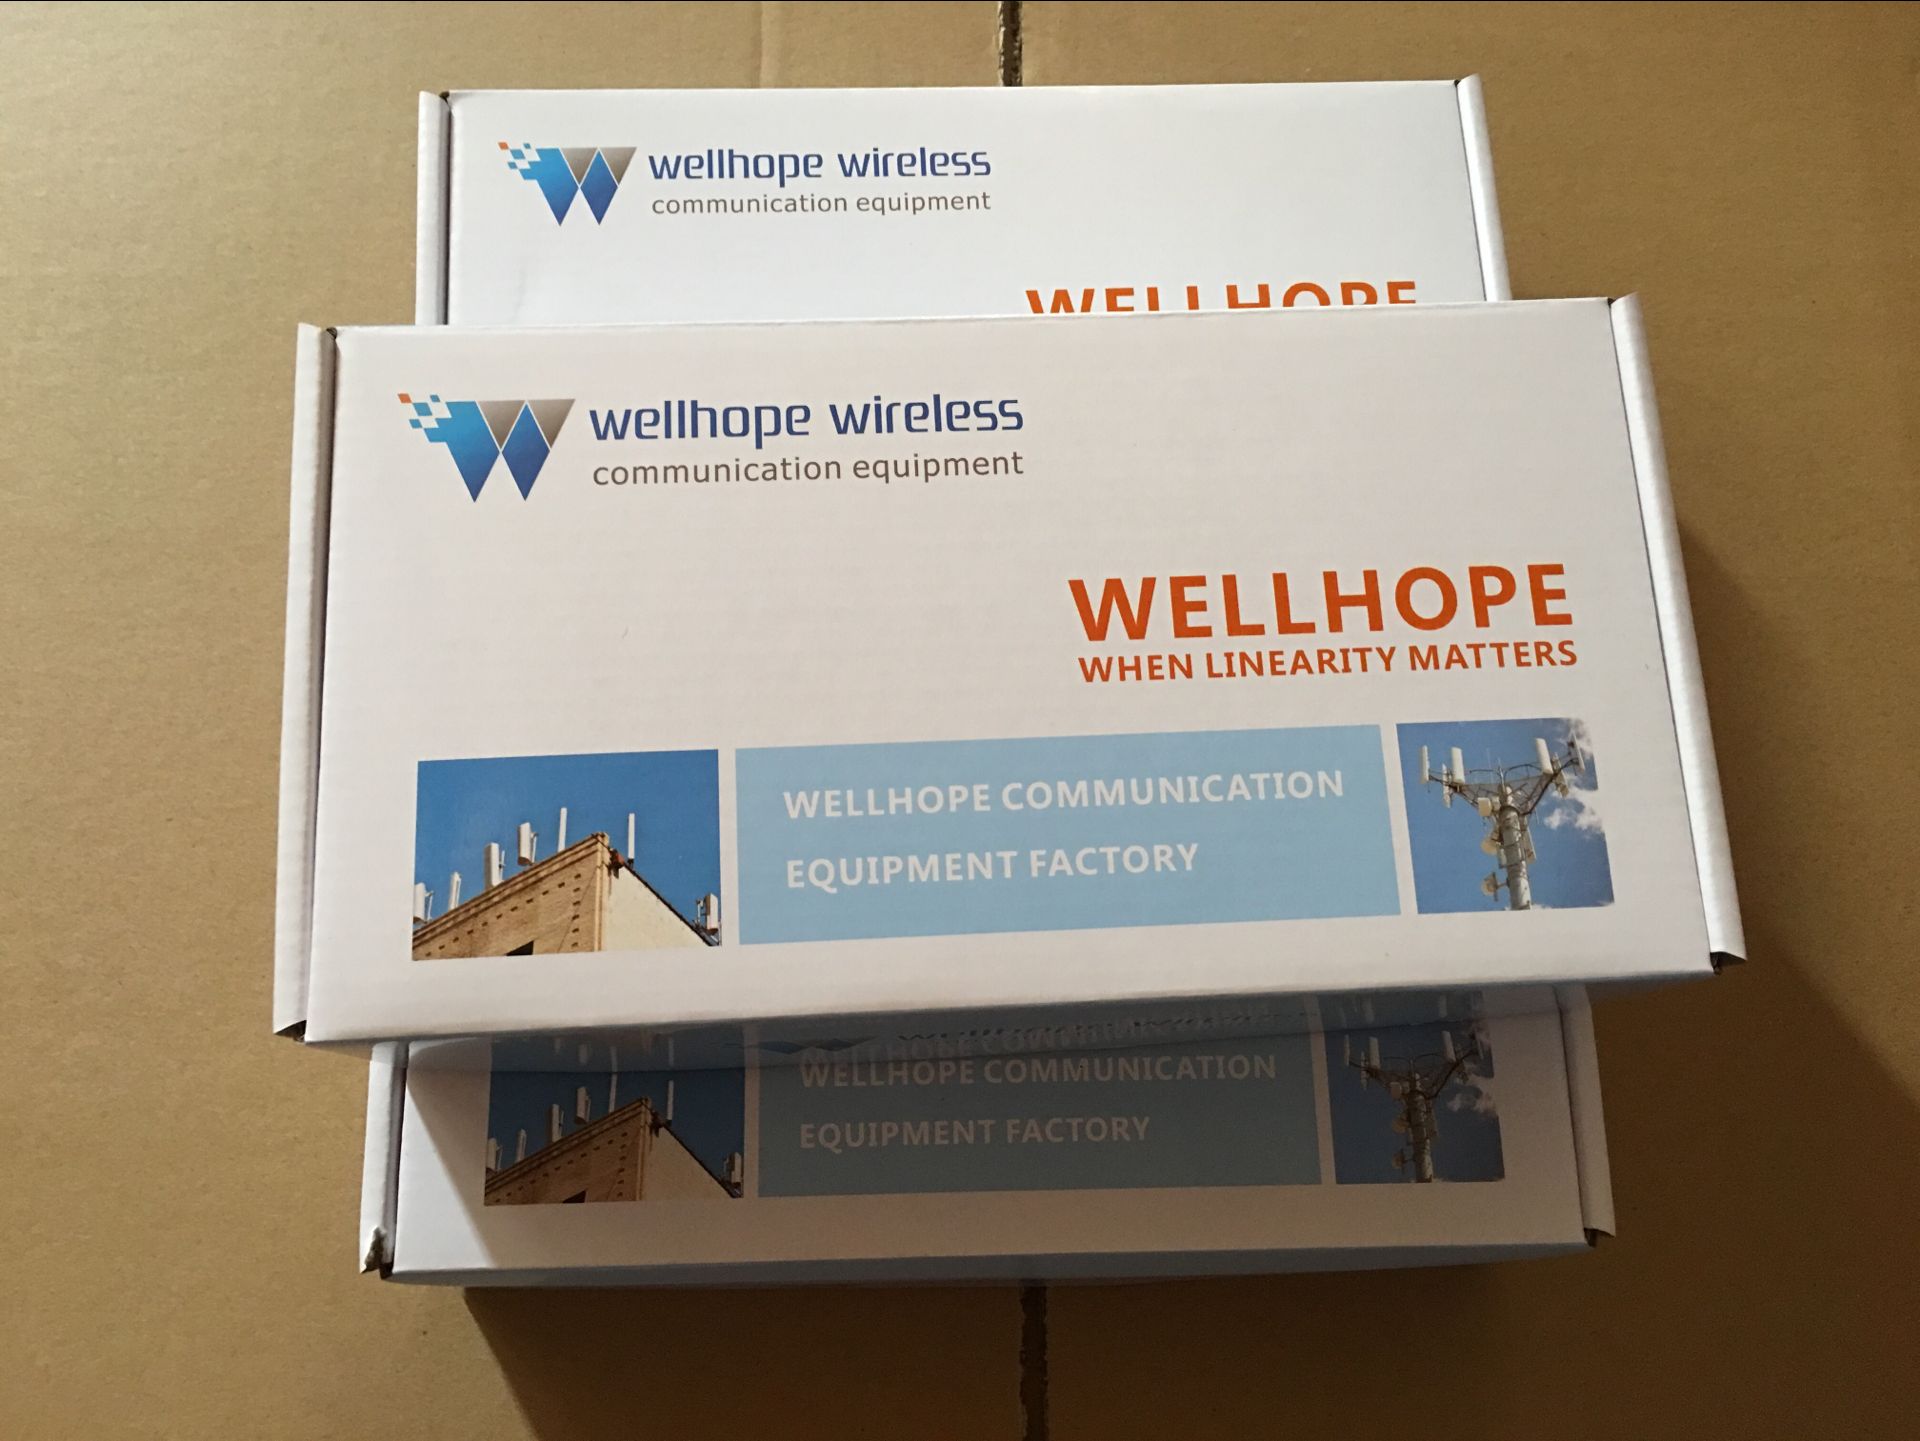  2017/7/26 wellhope беспроводной 2000 шт. 2.4GHz антенна WH-2.4GHz-02